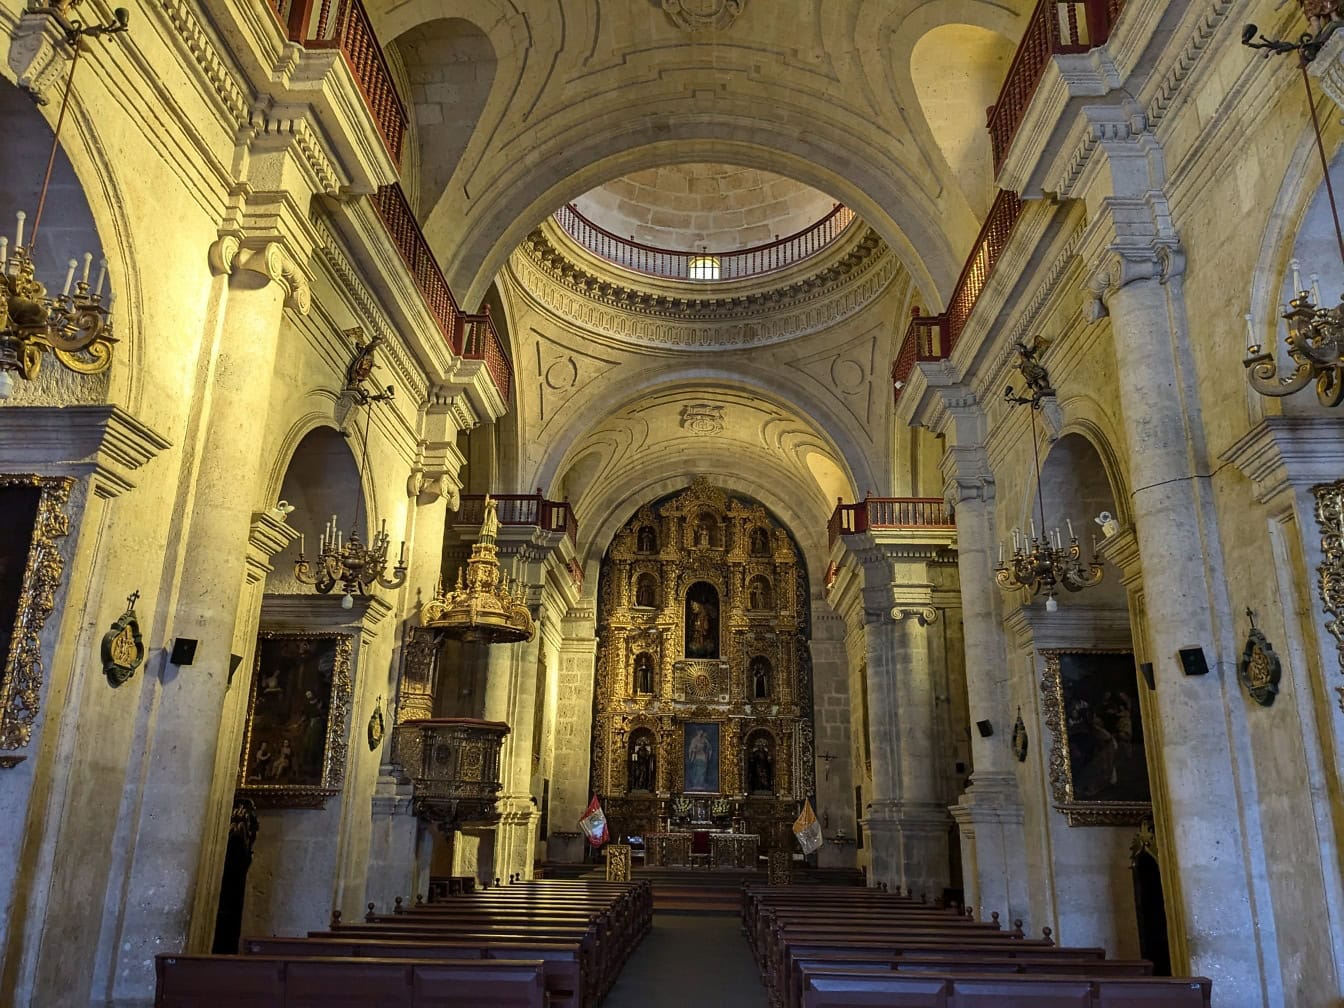 Interiér v barokovom štýle katolíckeho kostola Spoločnosti Ježišovej z Arequipy v Peru so zdobeným oltárom